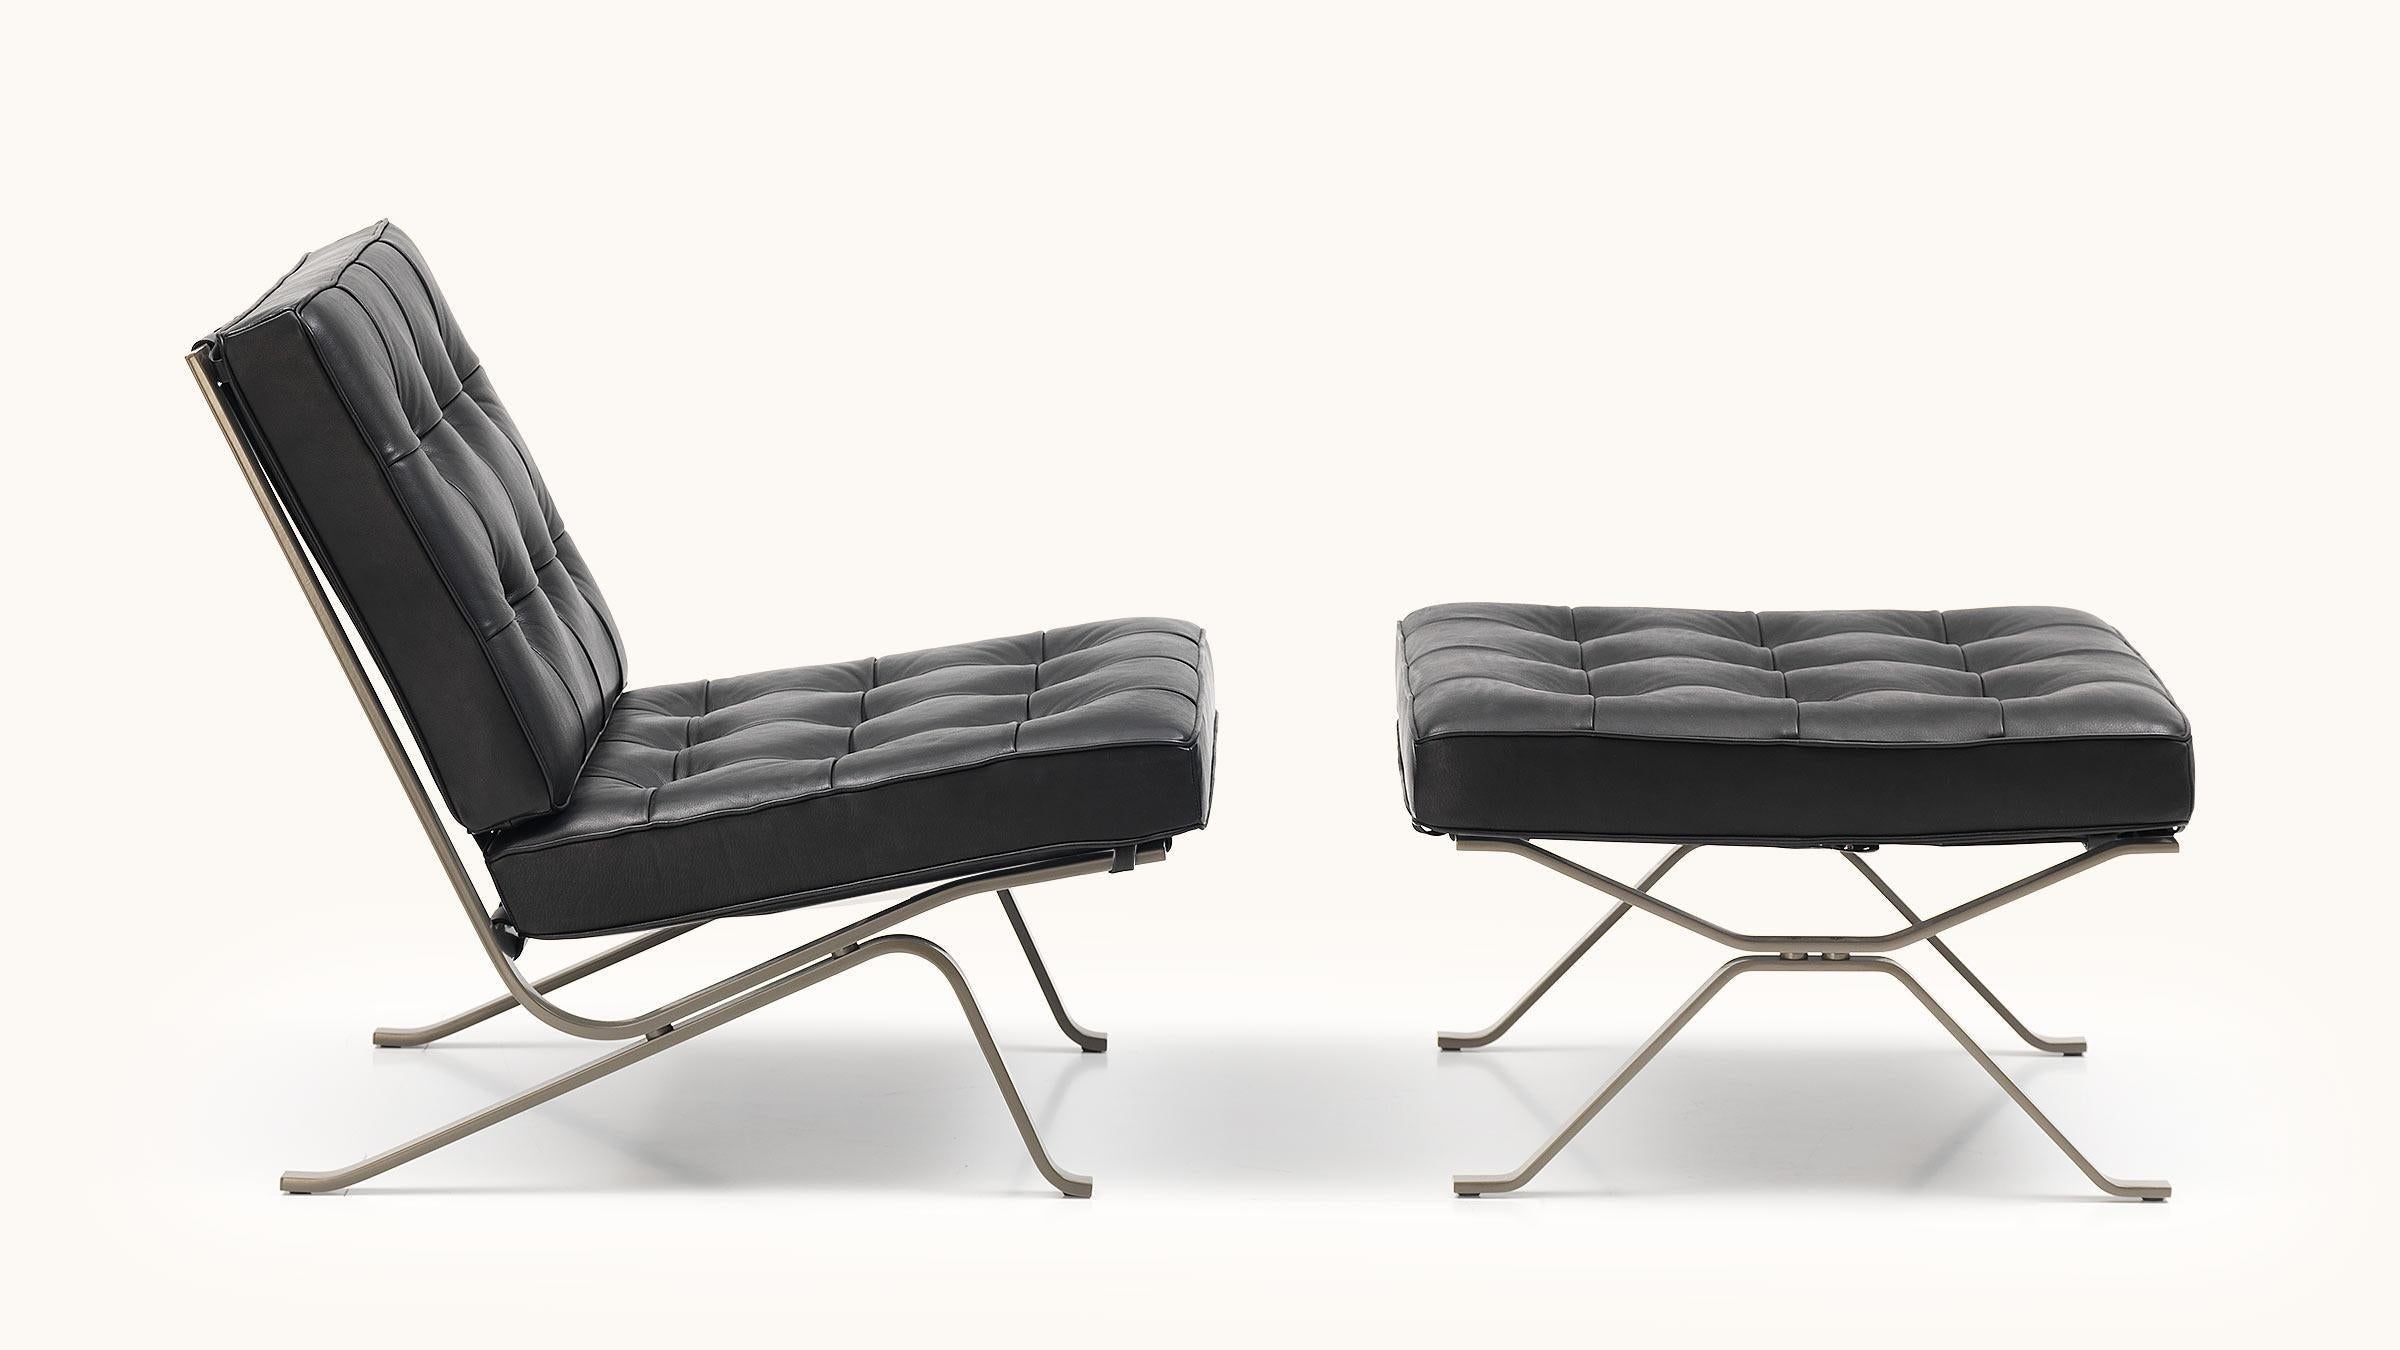 Dès 1954, Robert Haussmann a conçu son célèbre fauteuil métallique RH-301 en acier plat chromé en hommage à Mies van der Rohe. Depuis 1999, le RH-301 est chez de Sede. Avec ce fauteuil, Haussmann reprend la maxime du Bauhaus selon laquelle le design